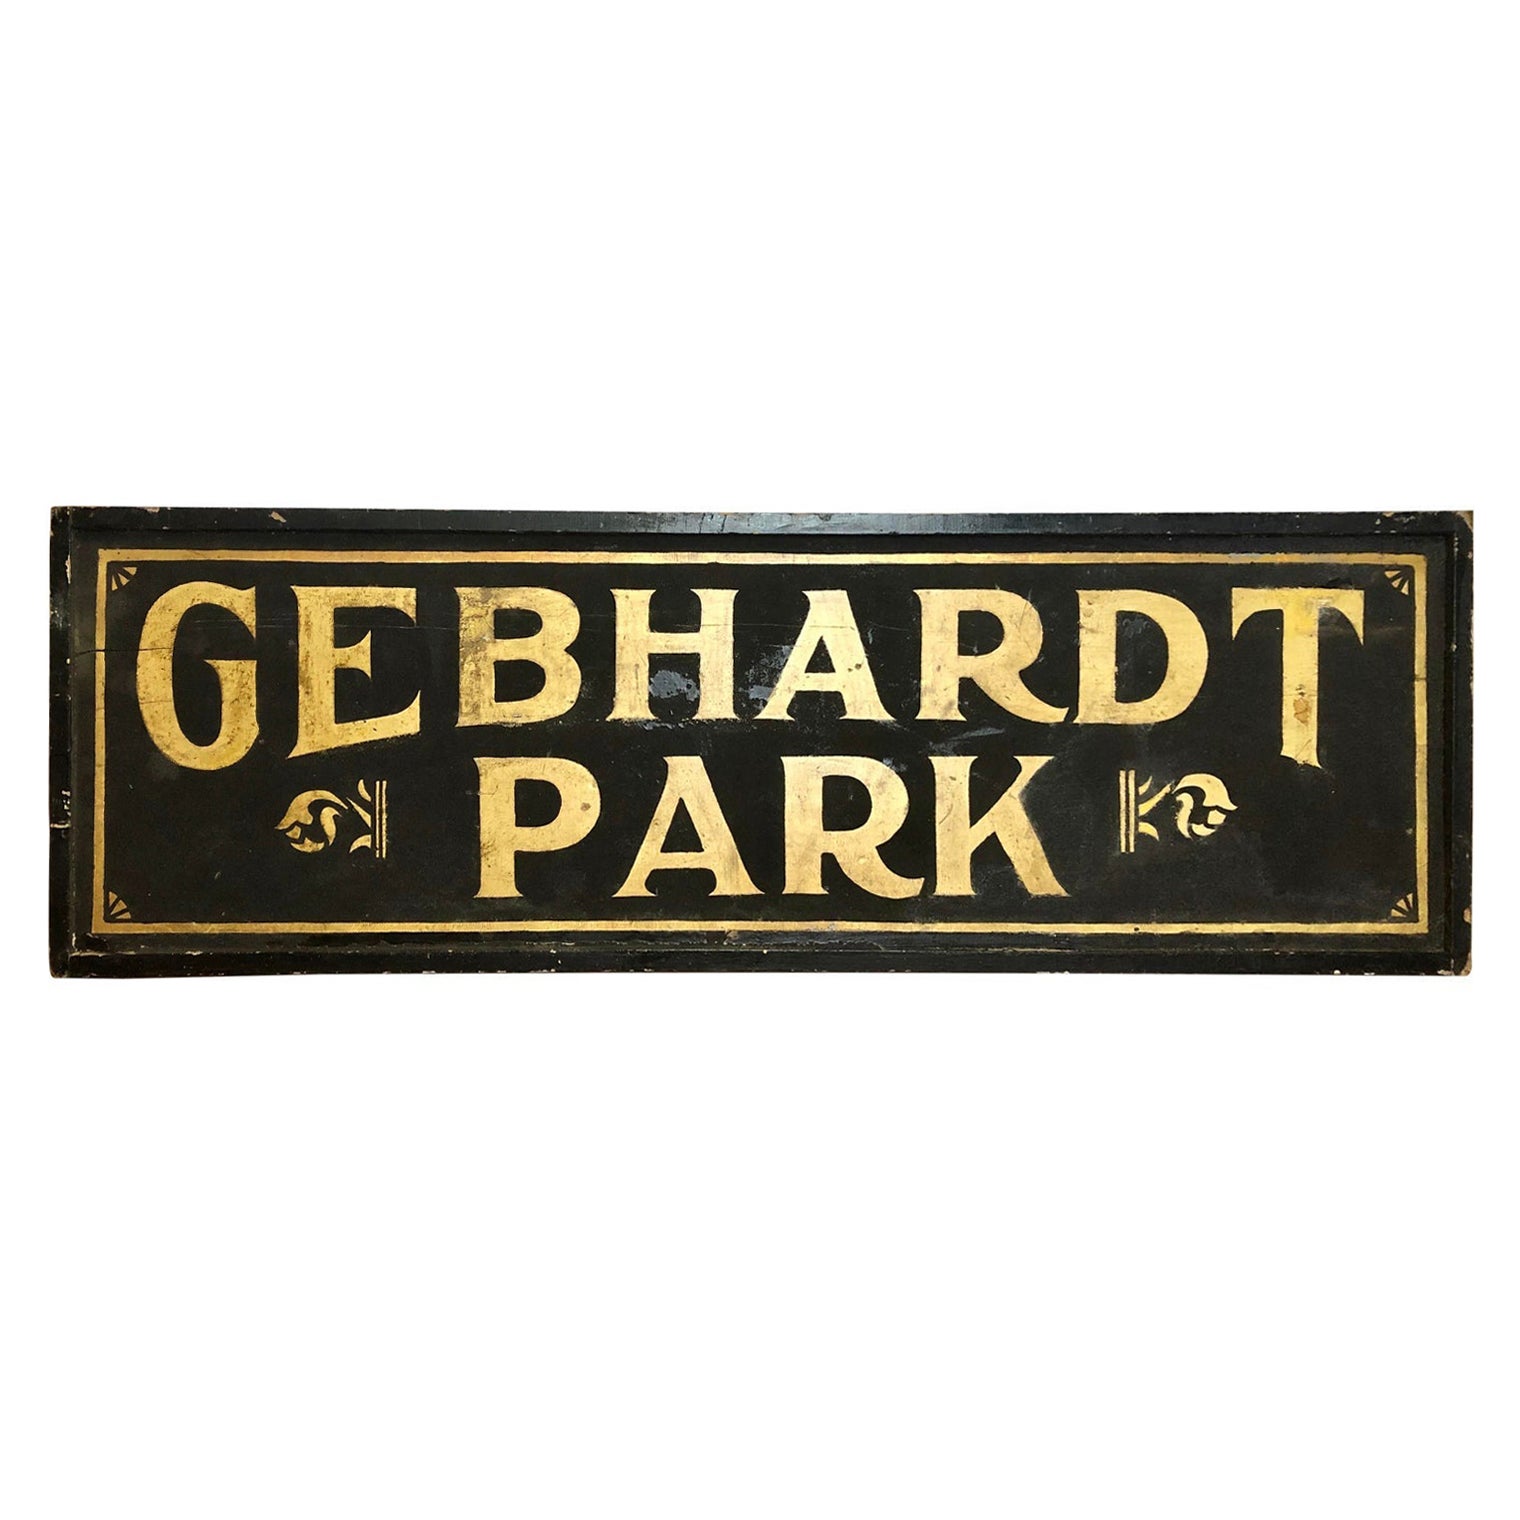 Antique Gold Leaf Black Sign "Gebhardt Park "